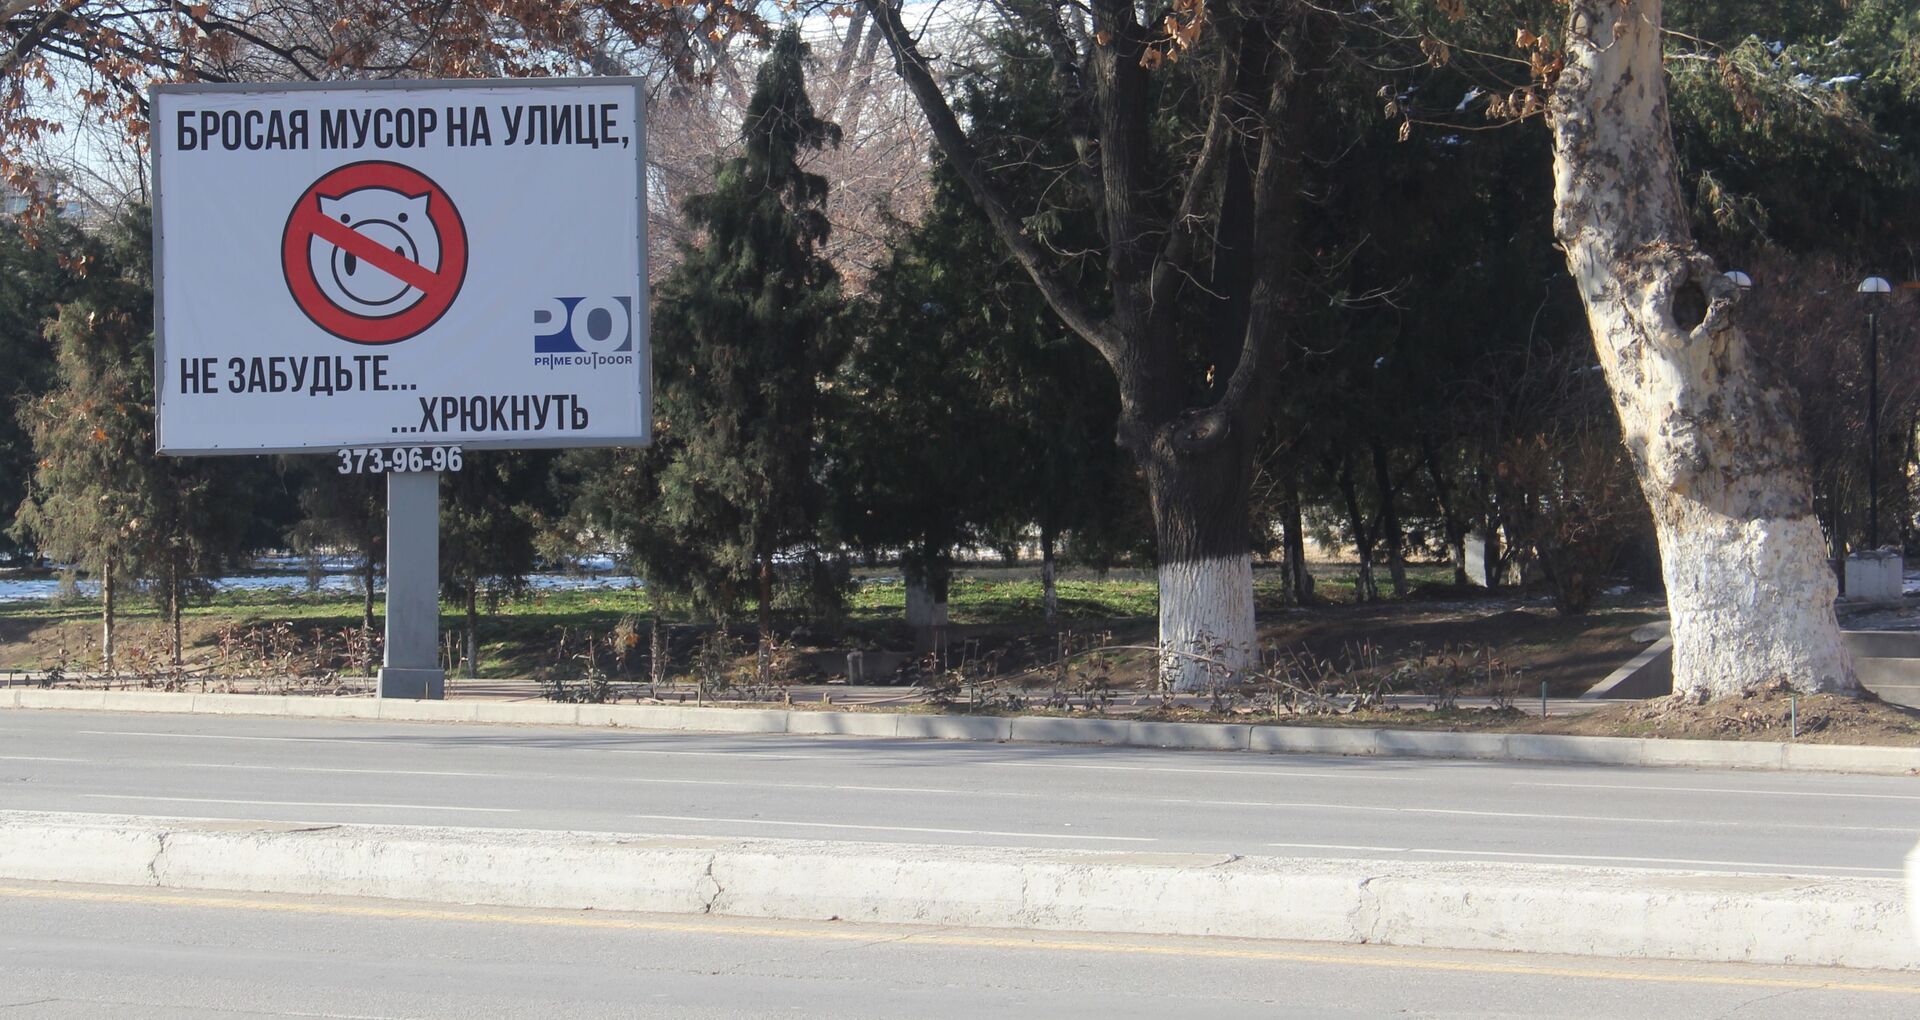 Социальная реклама в Ташкенте для борьбы с хаотичными свалками - Sputnik Узбекистан, 1920, 10.03.2021